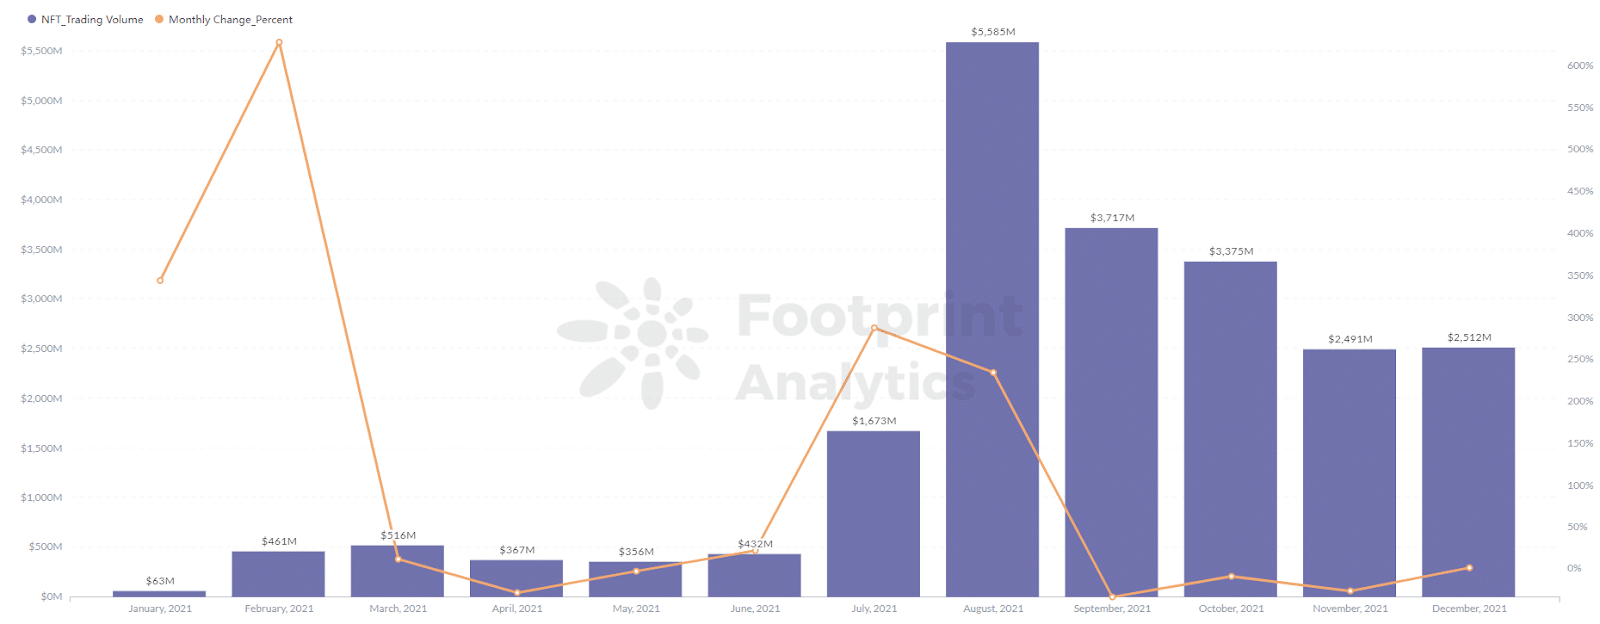 Footprint Analytics - El volumen de operaciones de los proyectos de NFT alcanzó un máximo de 5.586 millones en agosto